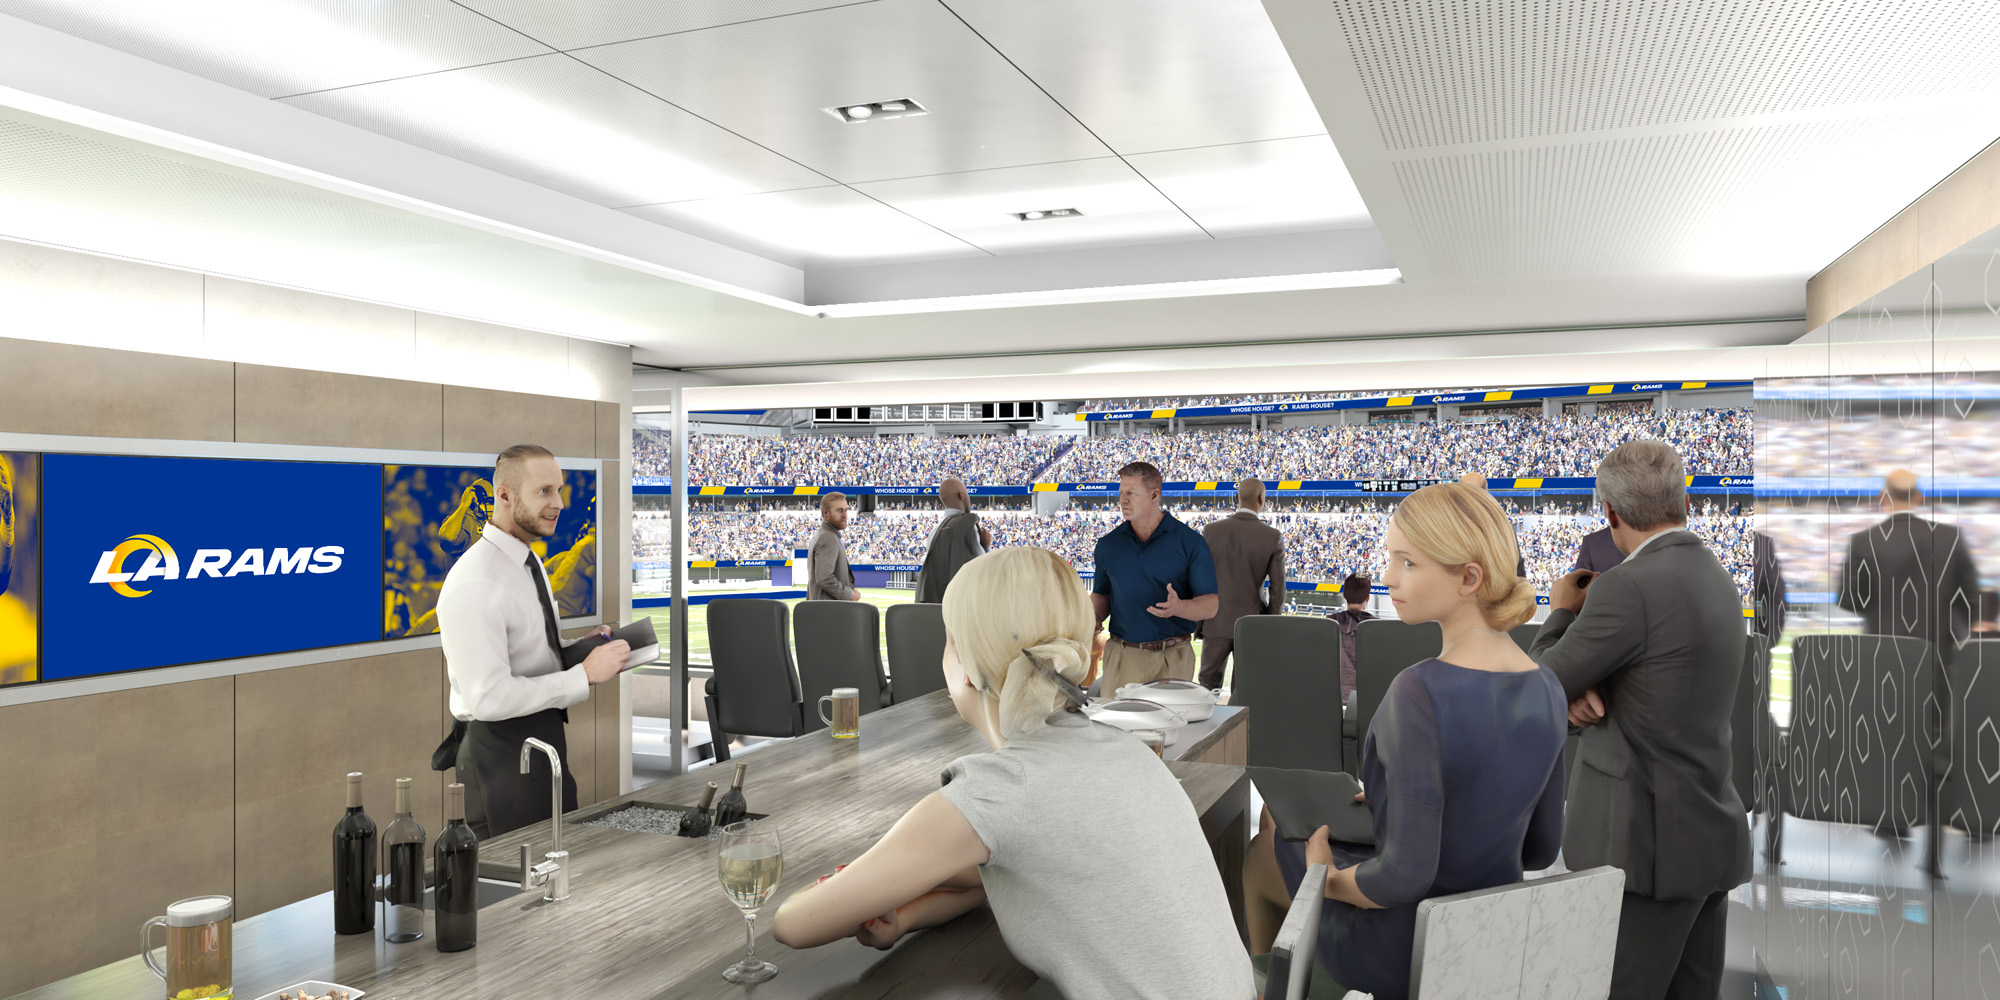 sofi-stadium-executive-suite-interior.jpg